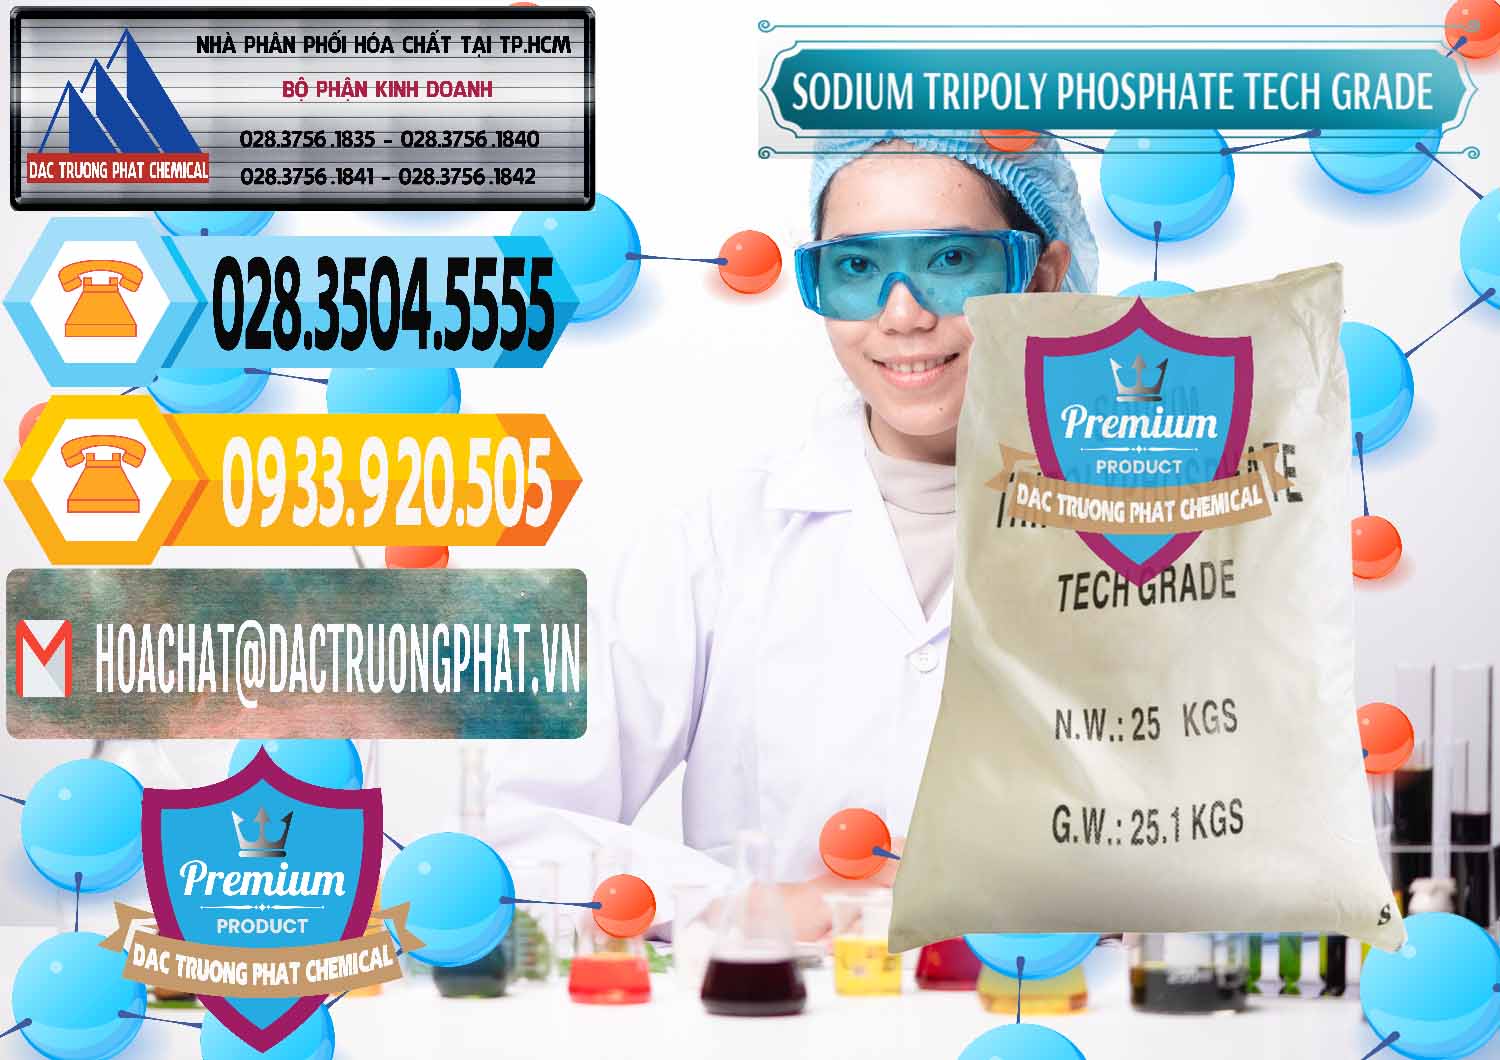 Nơi chuyên nhập khẩu ( bán ) Sodium Tripoly Phosphate - STPP Tech Grade Trung Quốc China - 0453 - Cty bán ( phân phối ) hóa chất tại TP.HCM - hoachattayrua.net